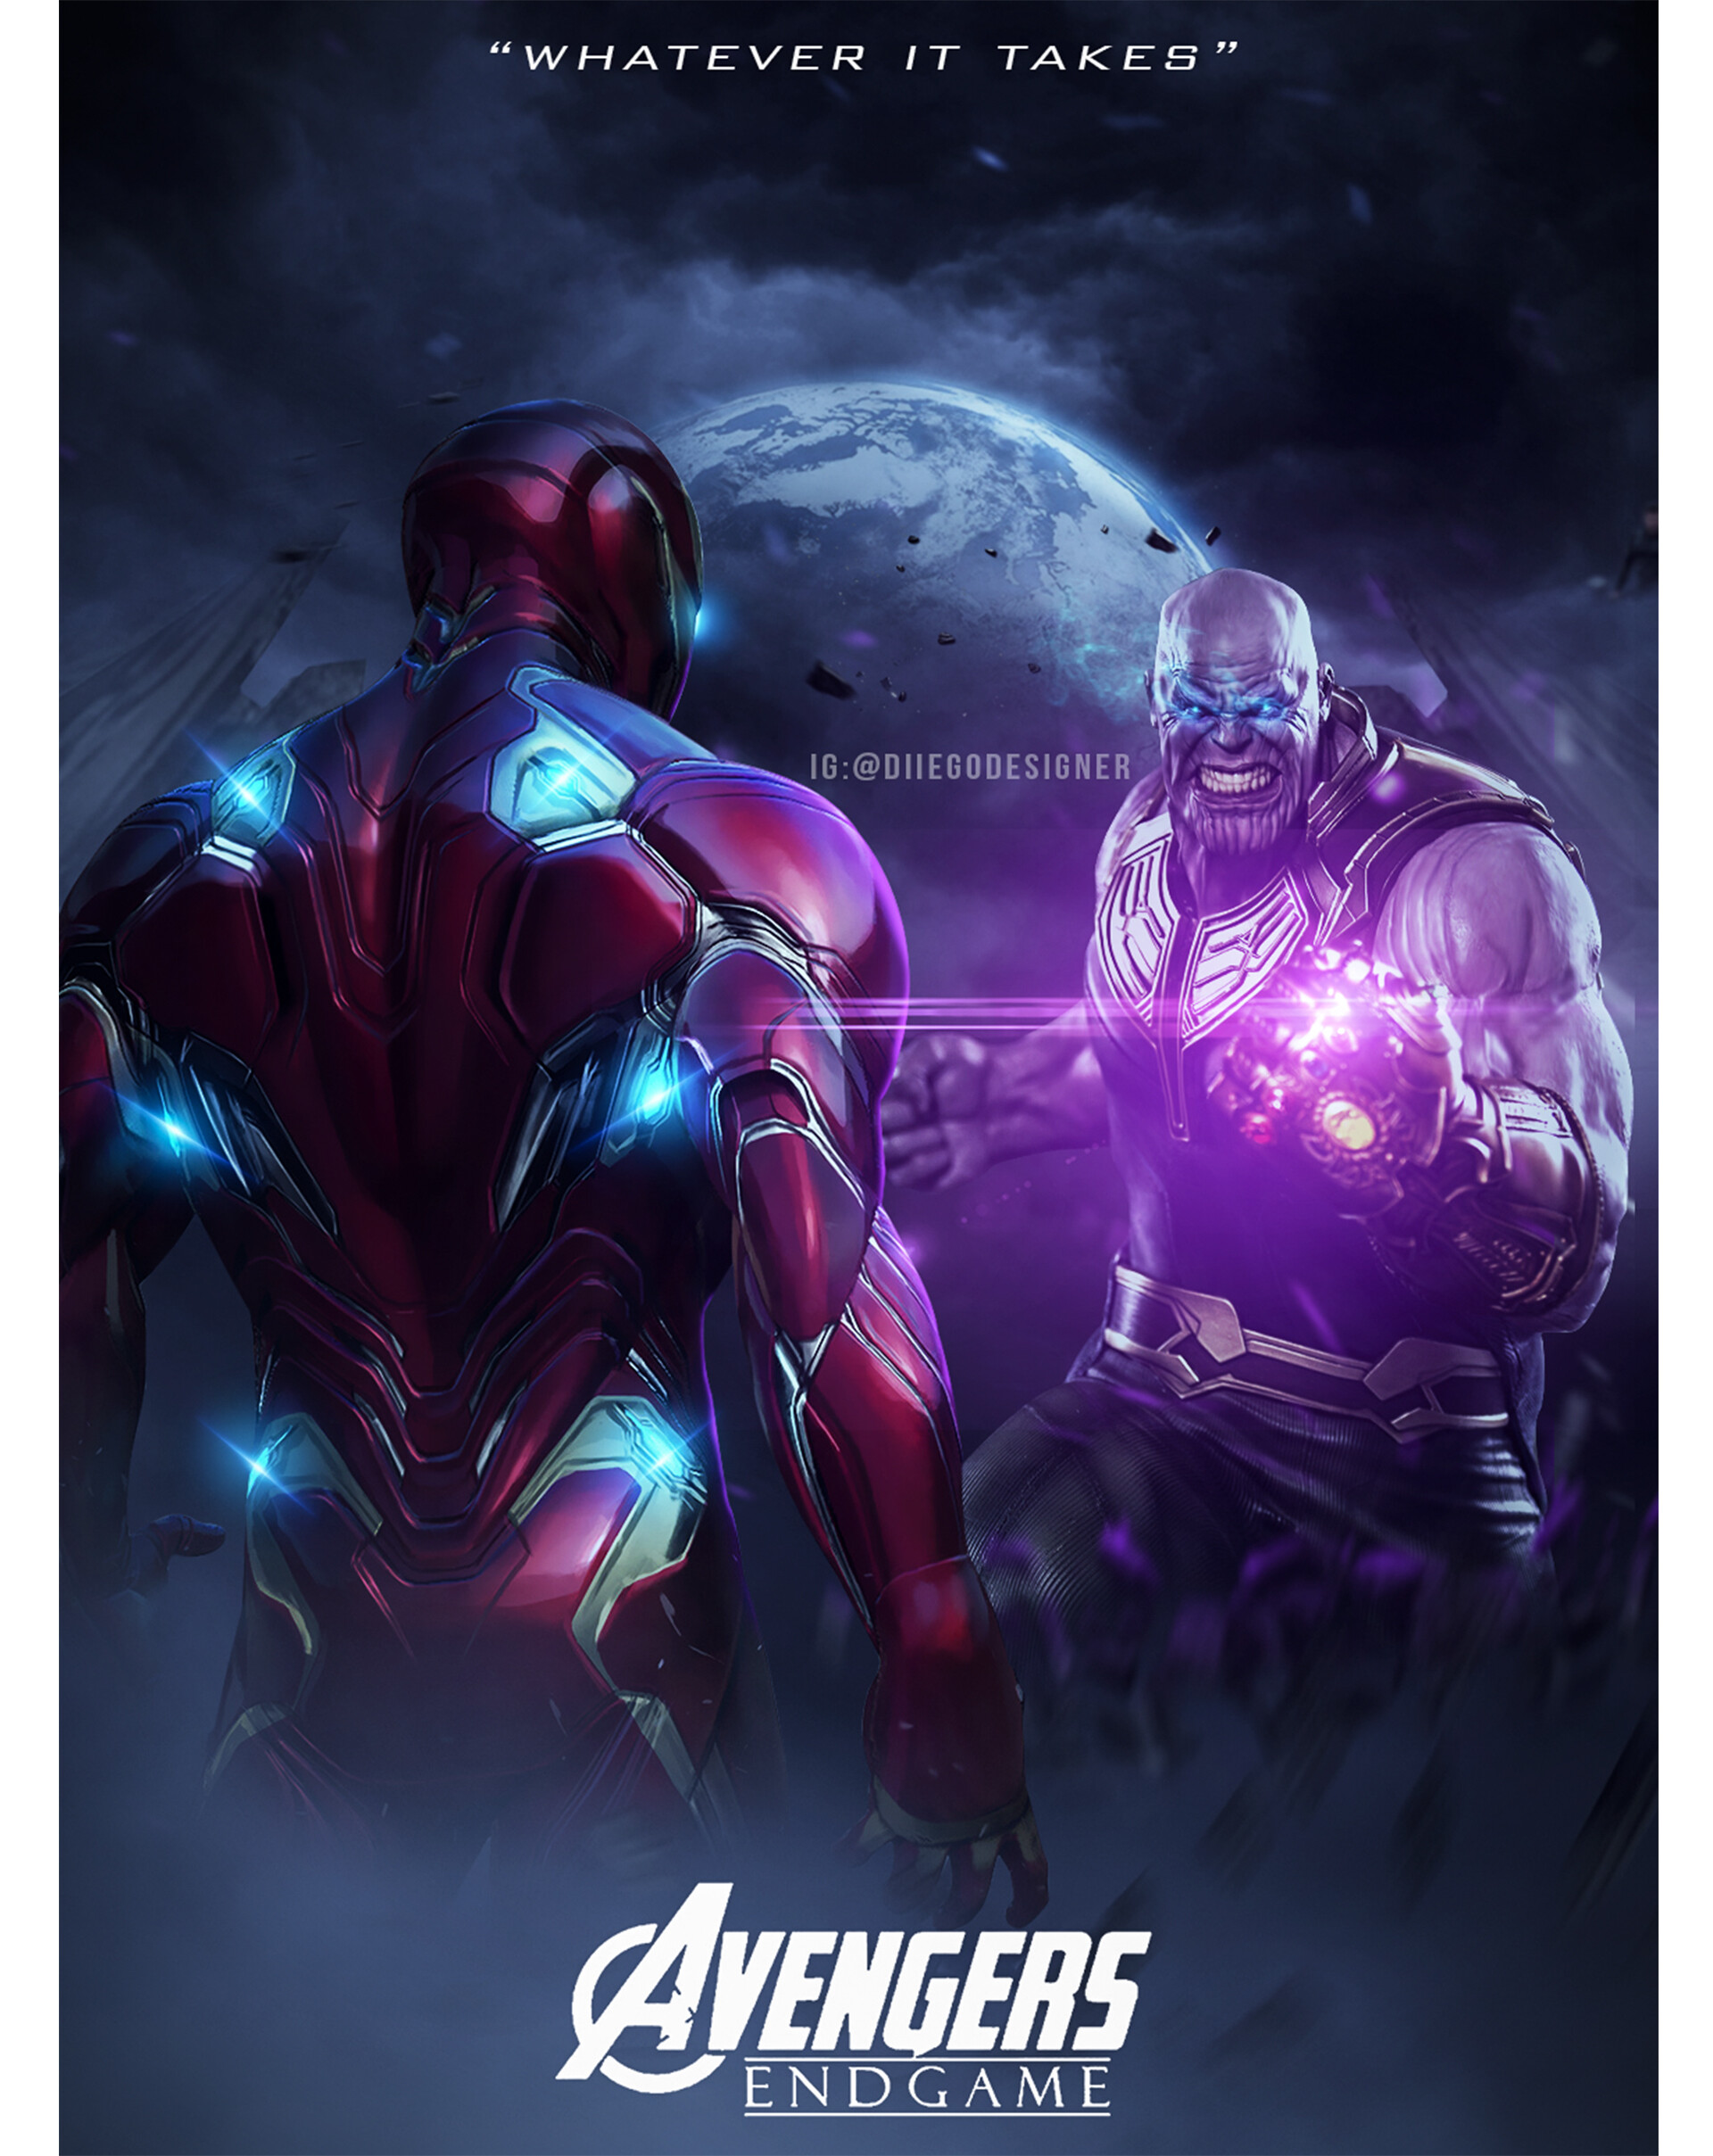 ArtStation - Avengers end game poster design